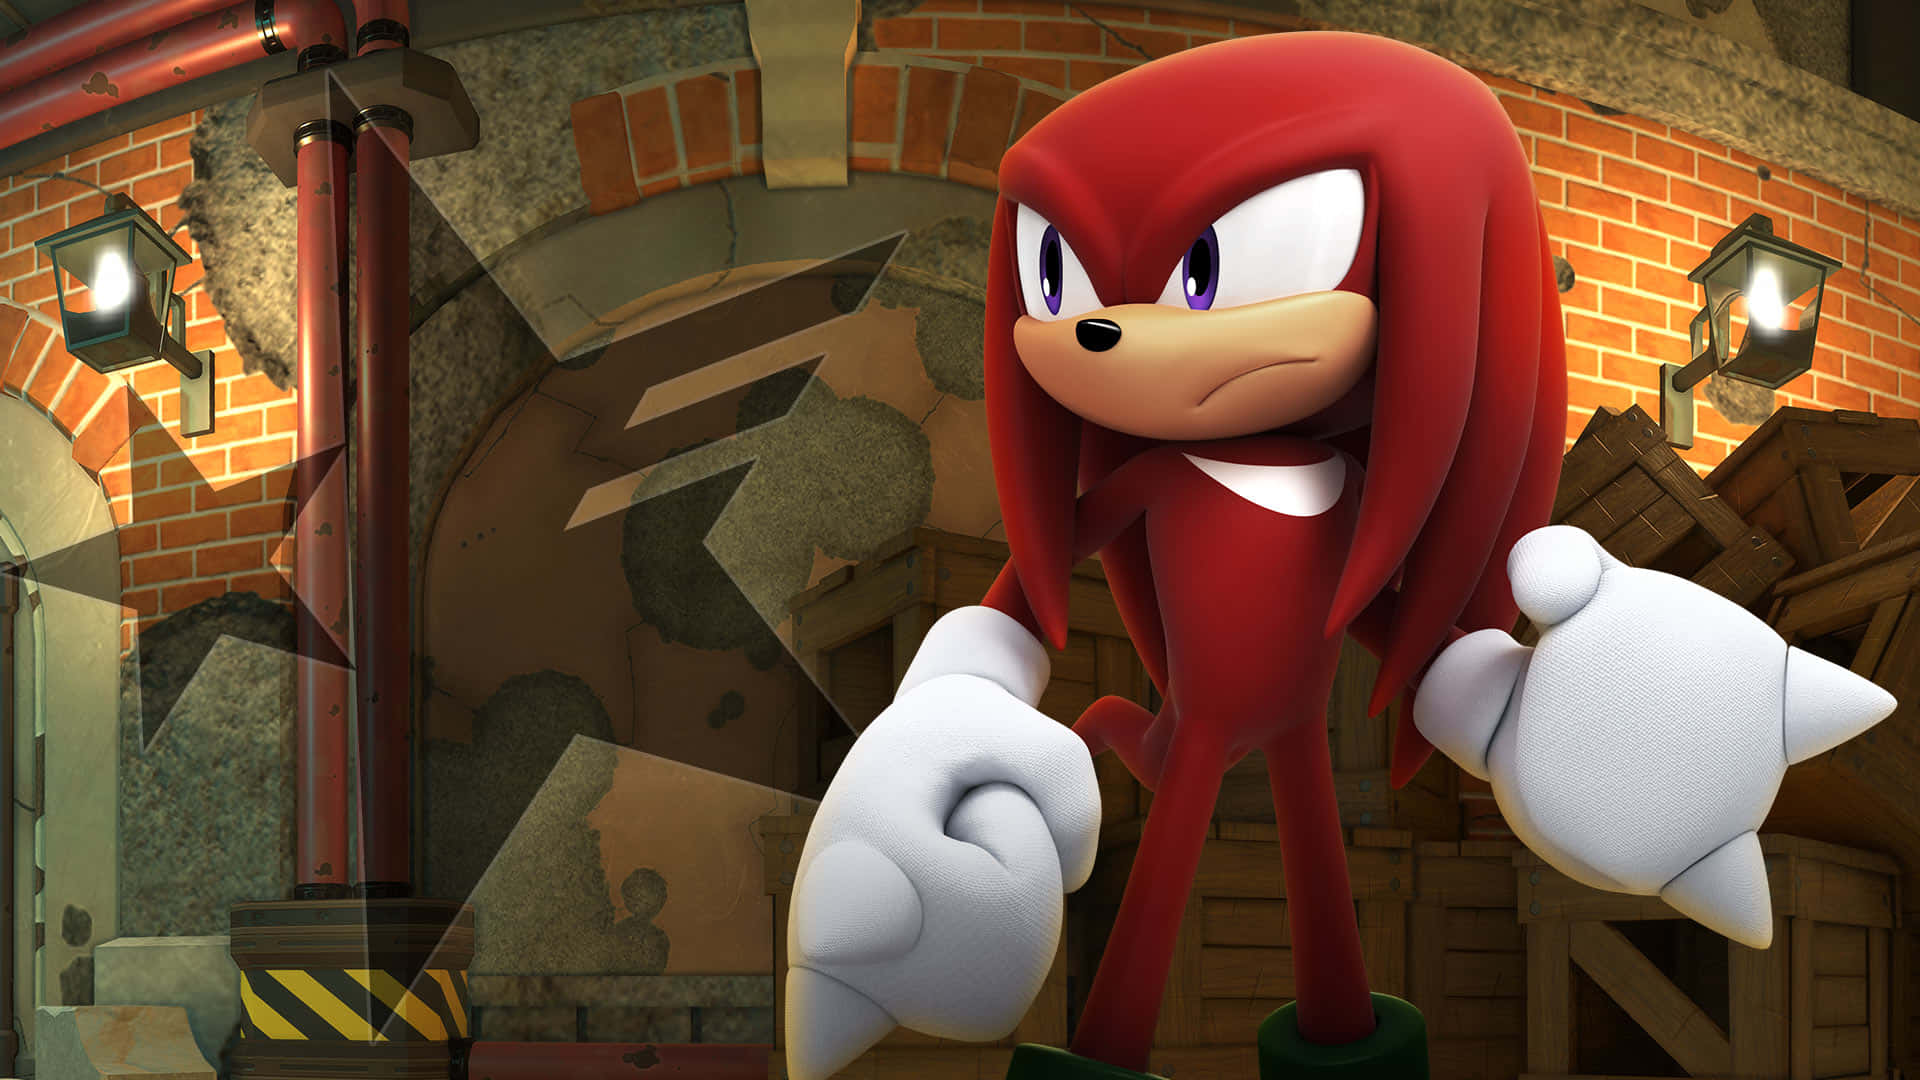 Sonicthe Hedgehog Trägt Ein Rotes Outfit Und Steht Vor Einer Ziegelwand. Wallpaper